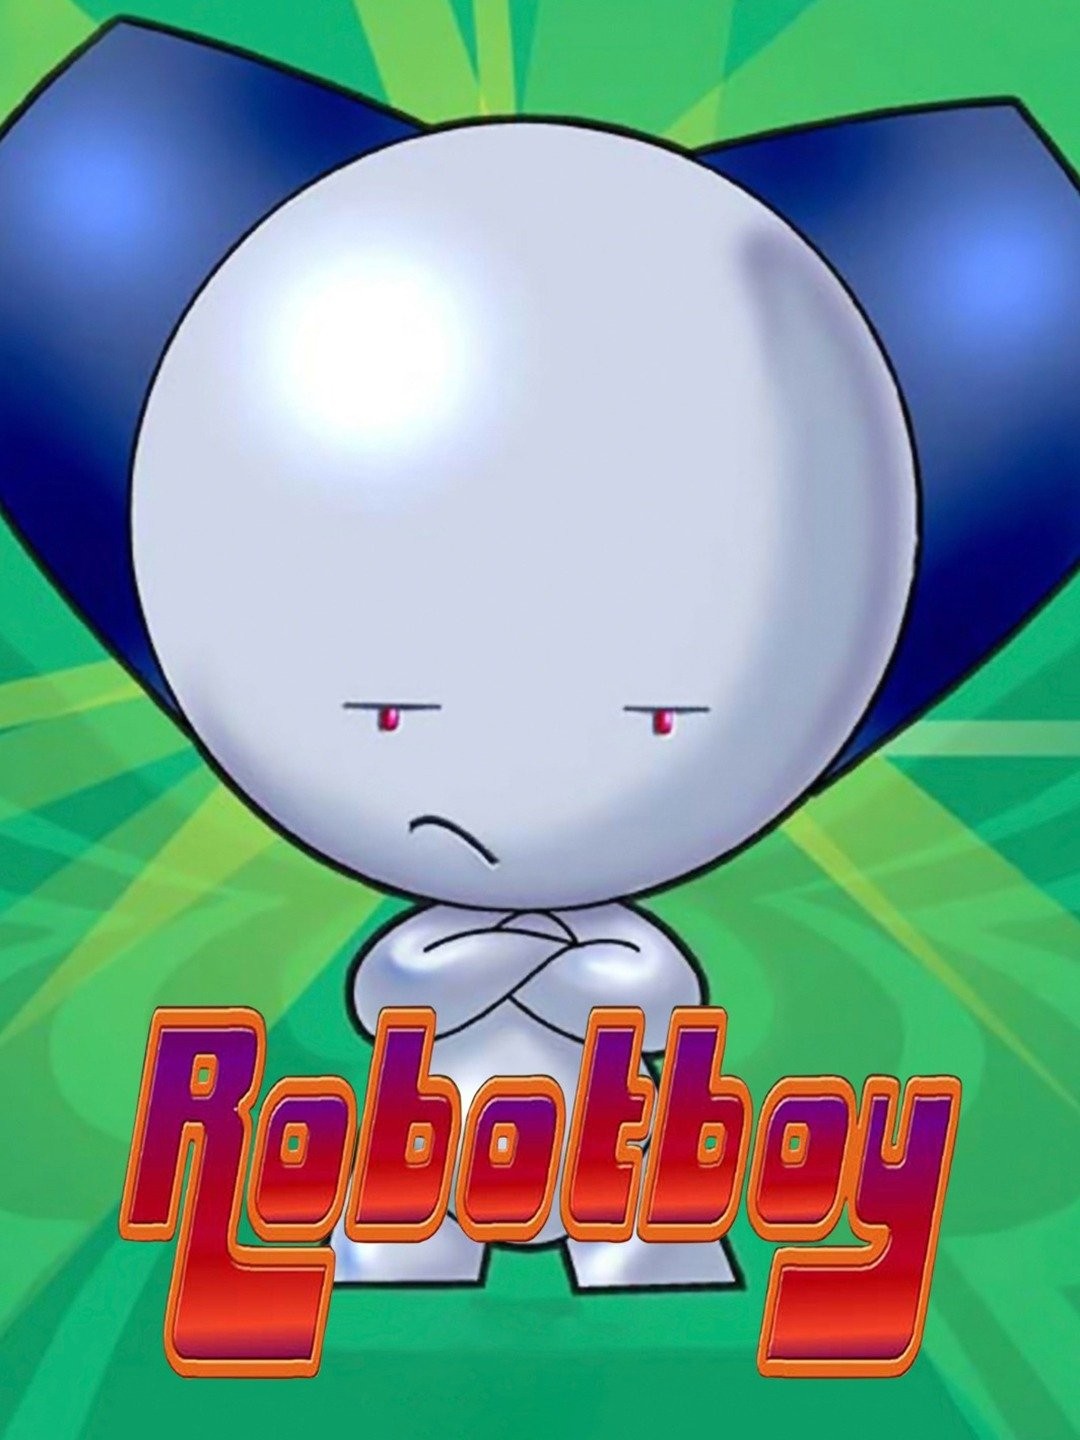 Robotboy, Clammadon Rising, The Sleepover